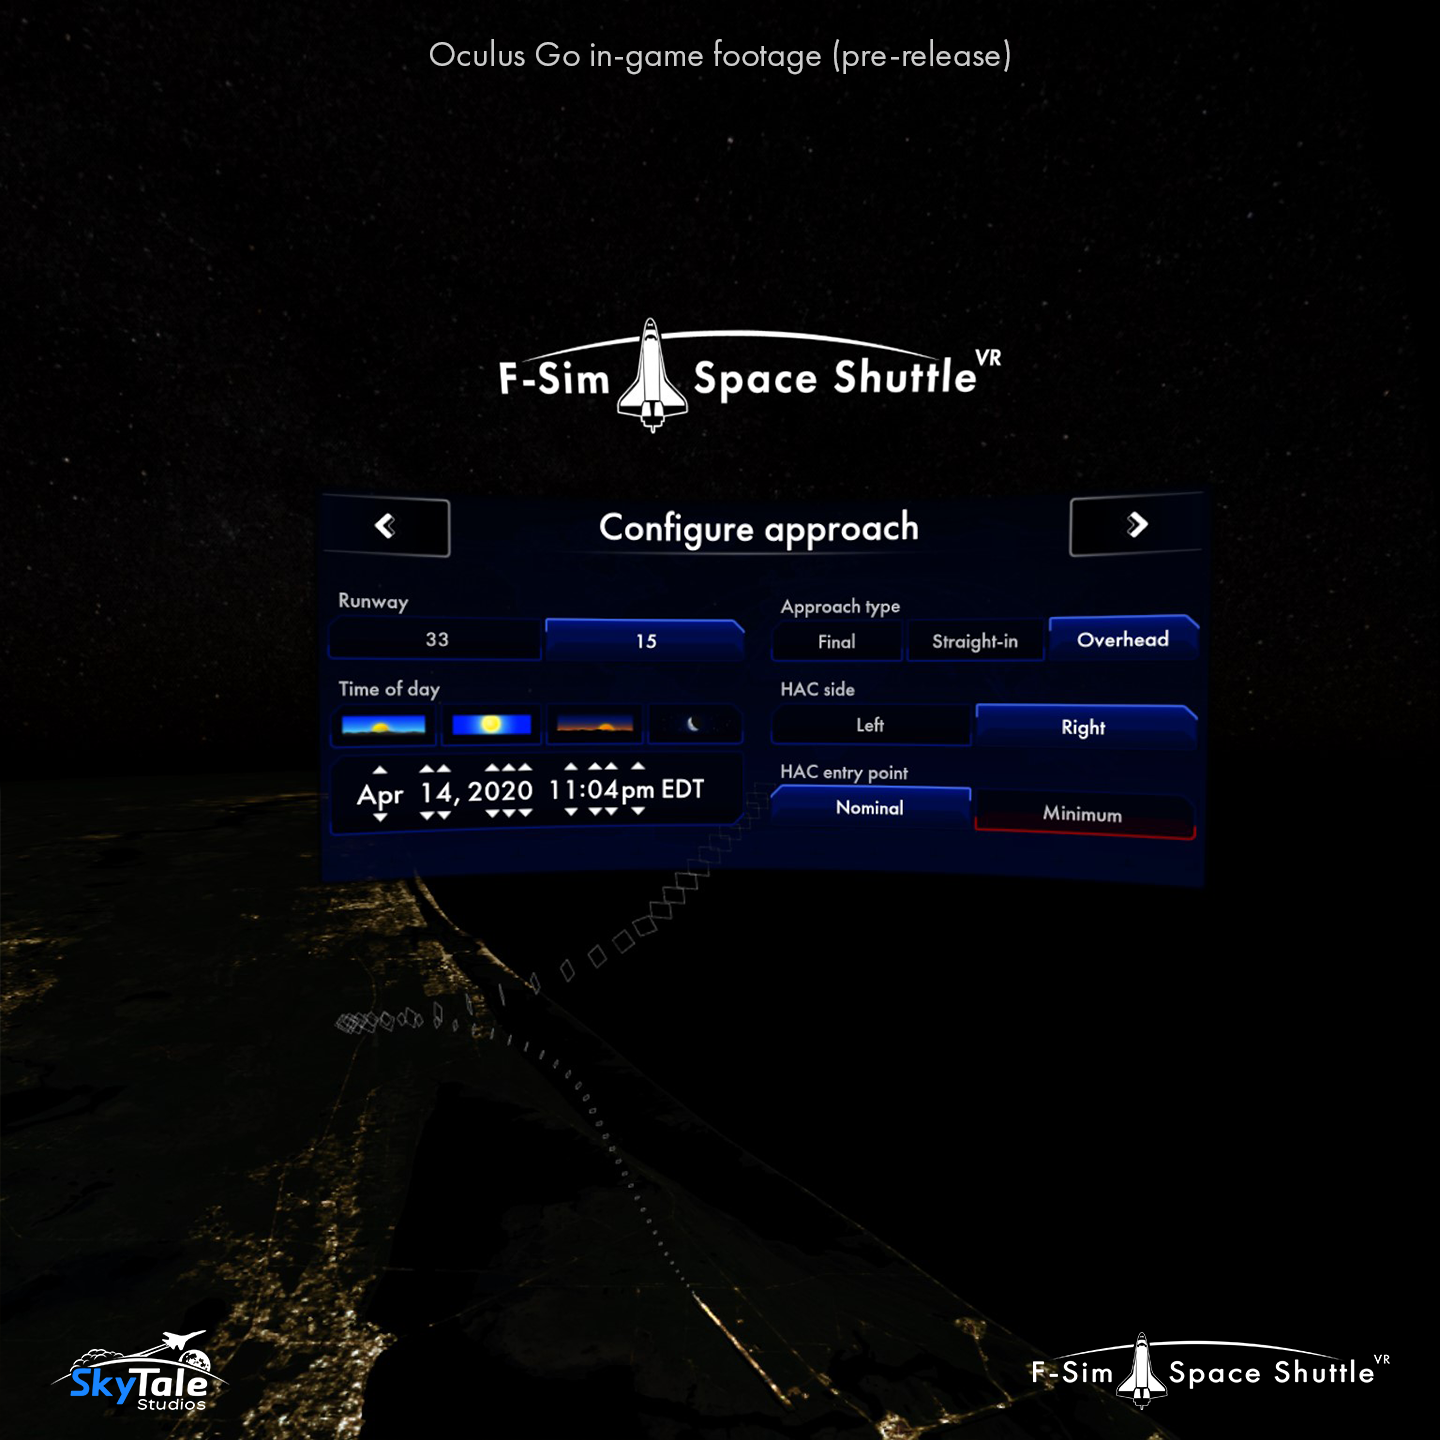 F-Sim Space Shuttle VR - Oculus Go - Menu 1 - 1440.png